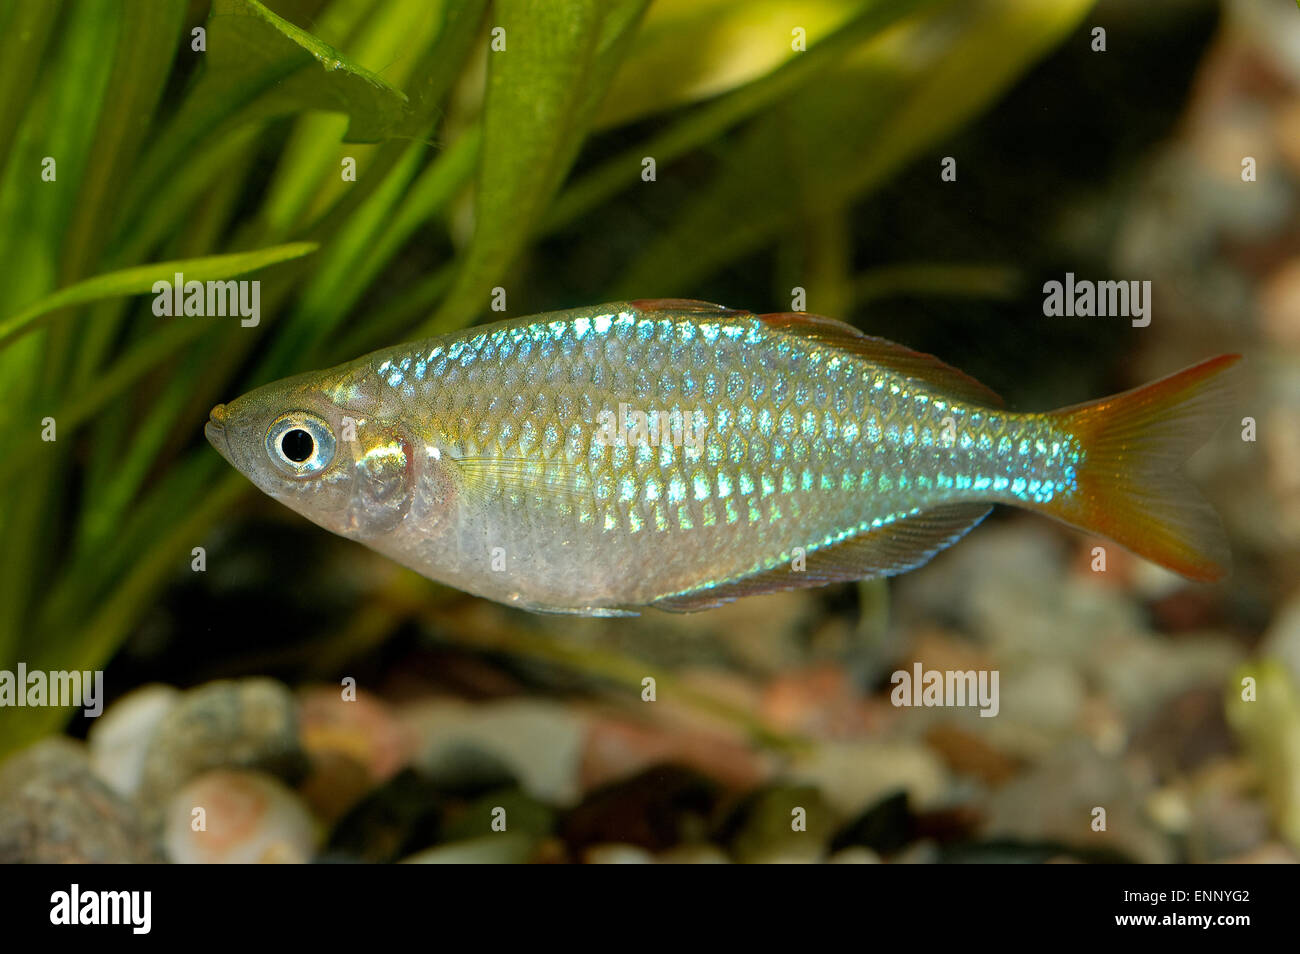 Aquarium fish from genus Melanotaenia. Stock Photo